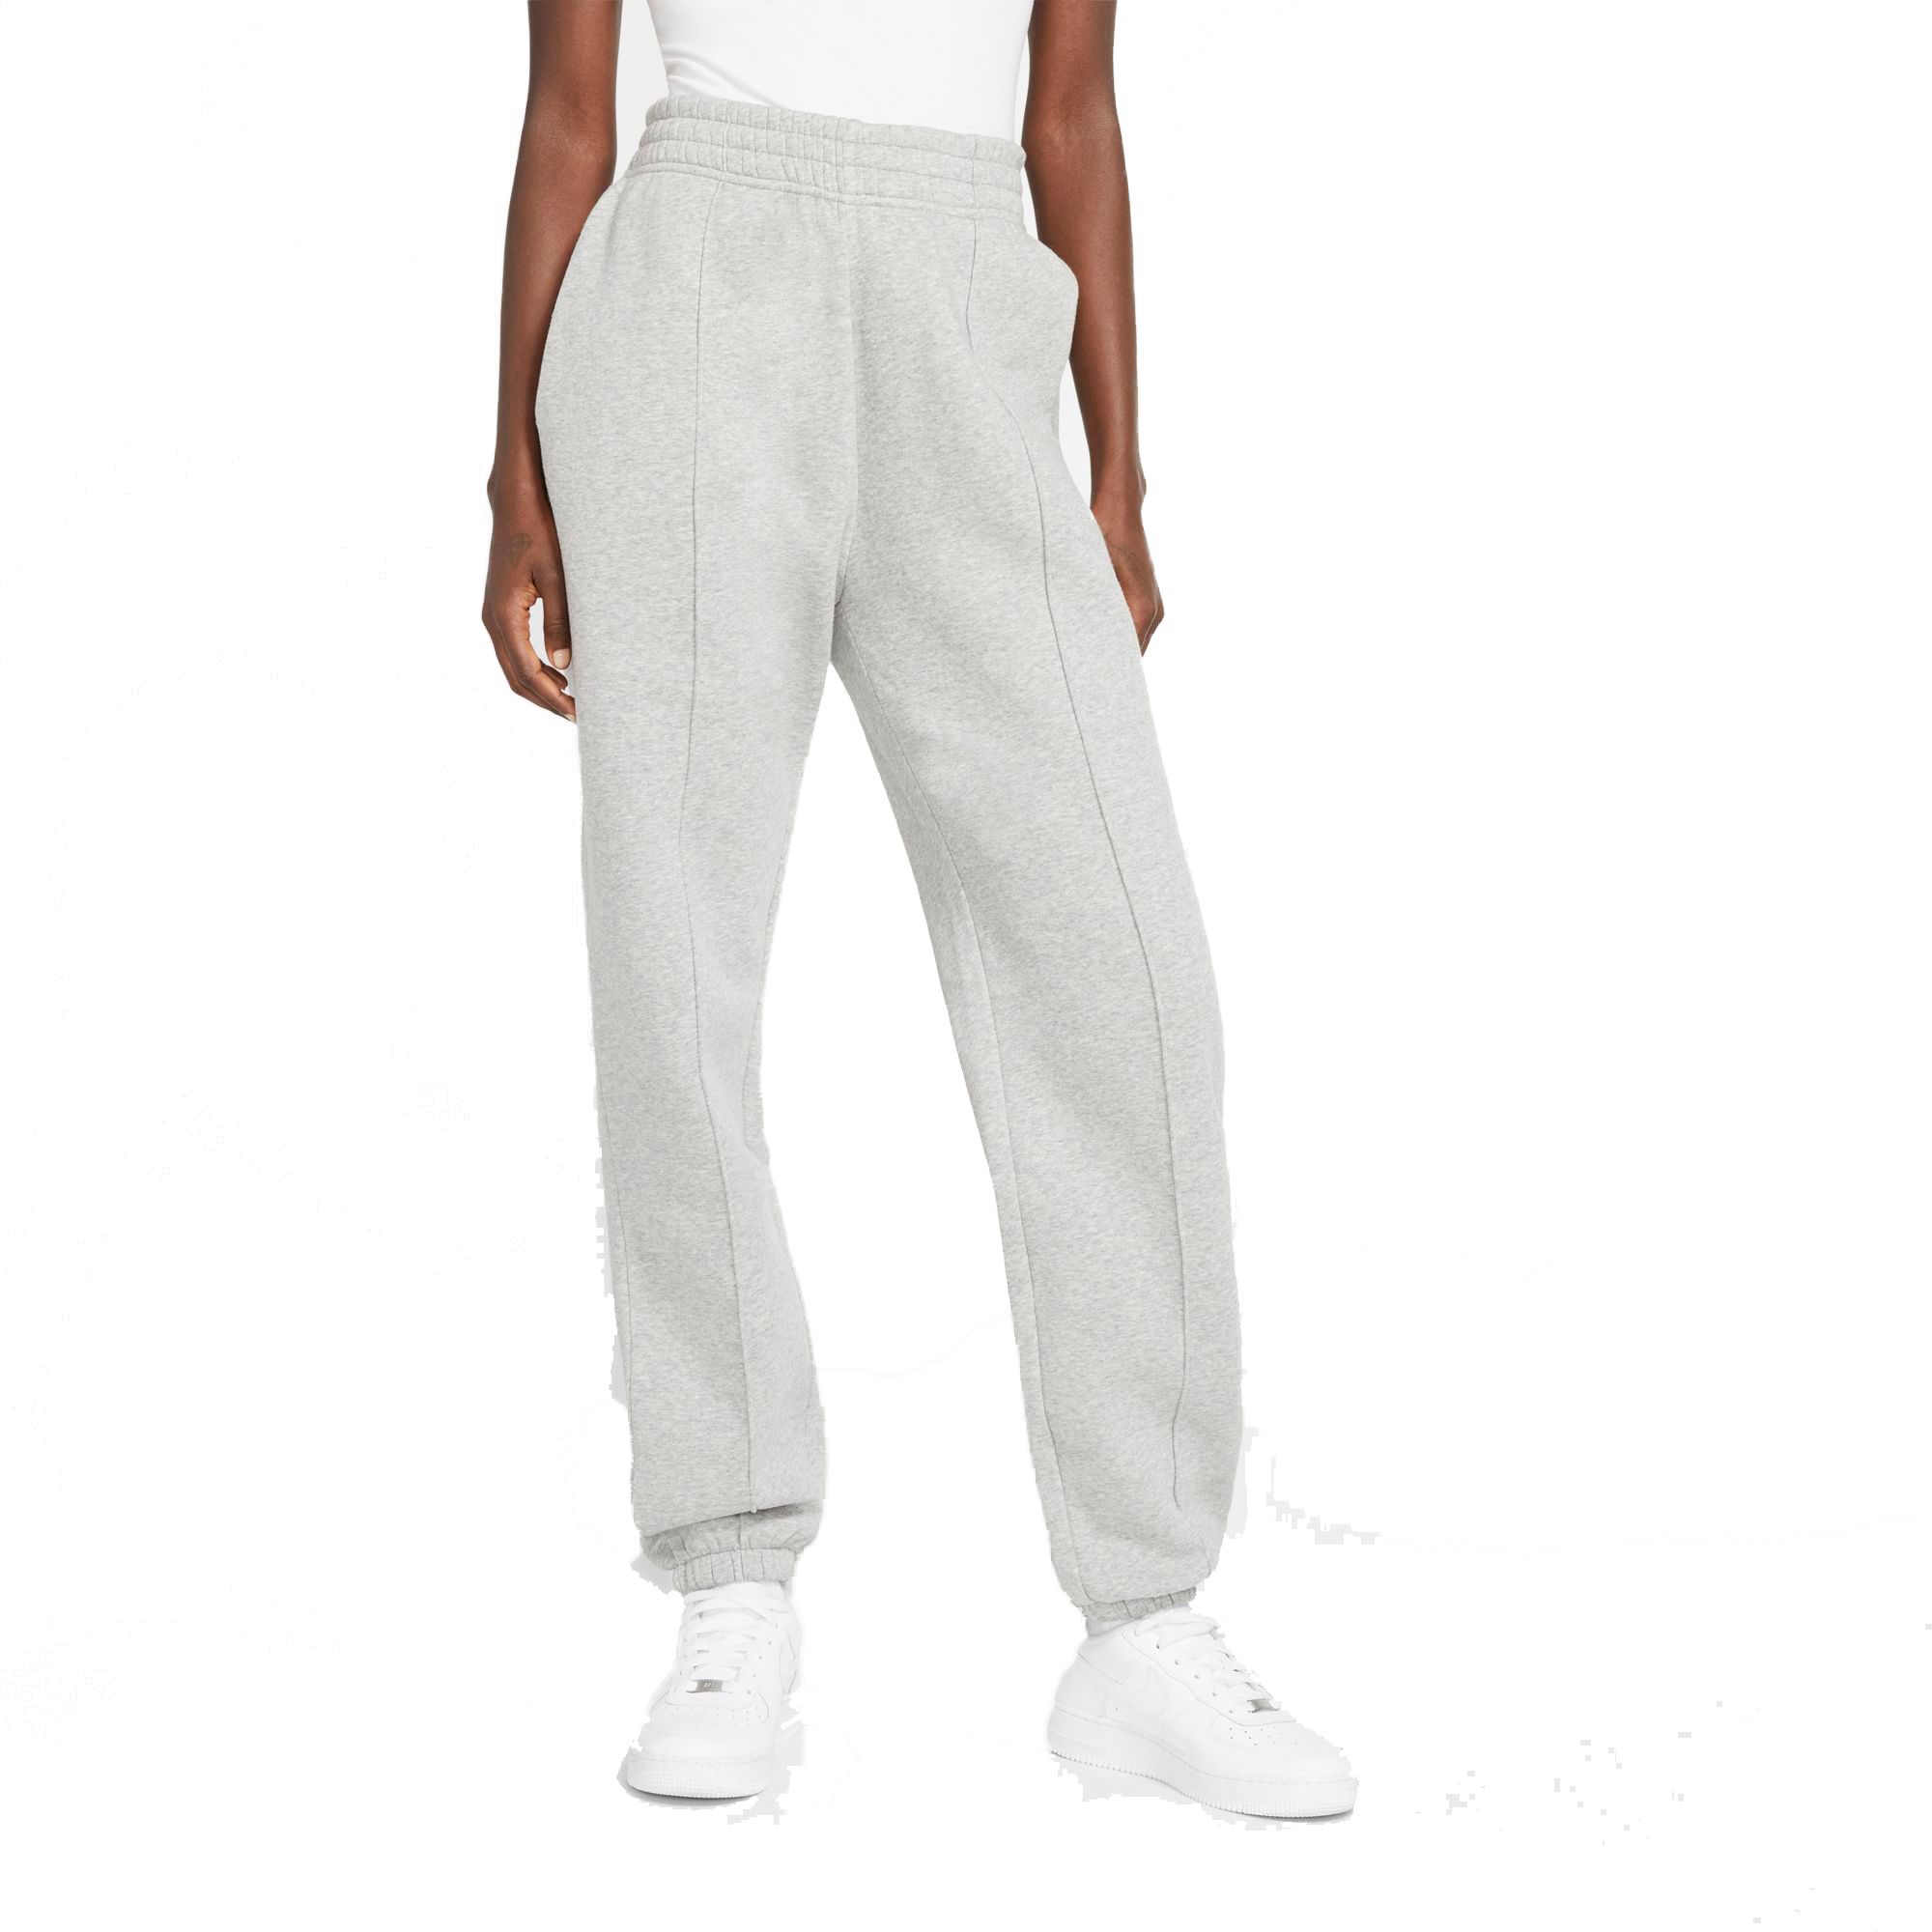 Nike Women's Trend Essential Fleece Pants, Medium, Dk Grey Heather